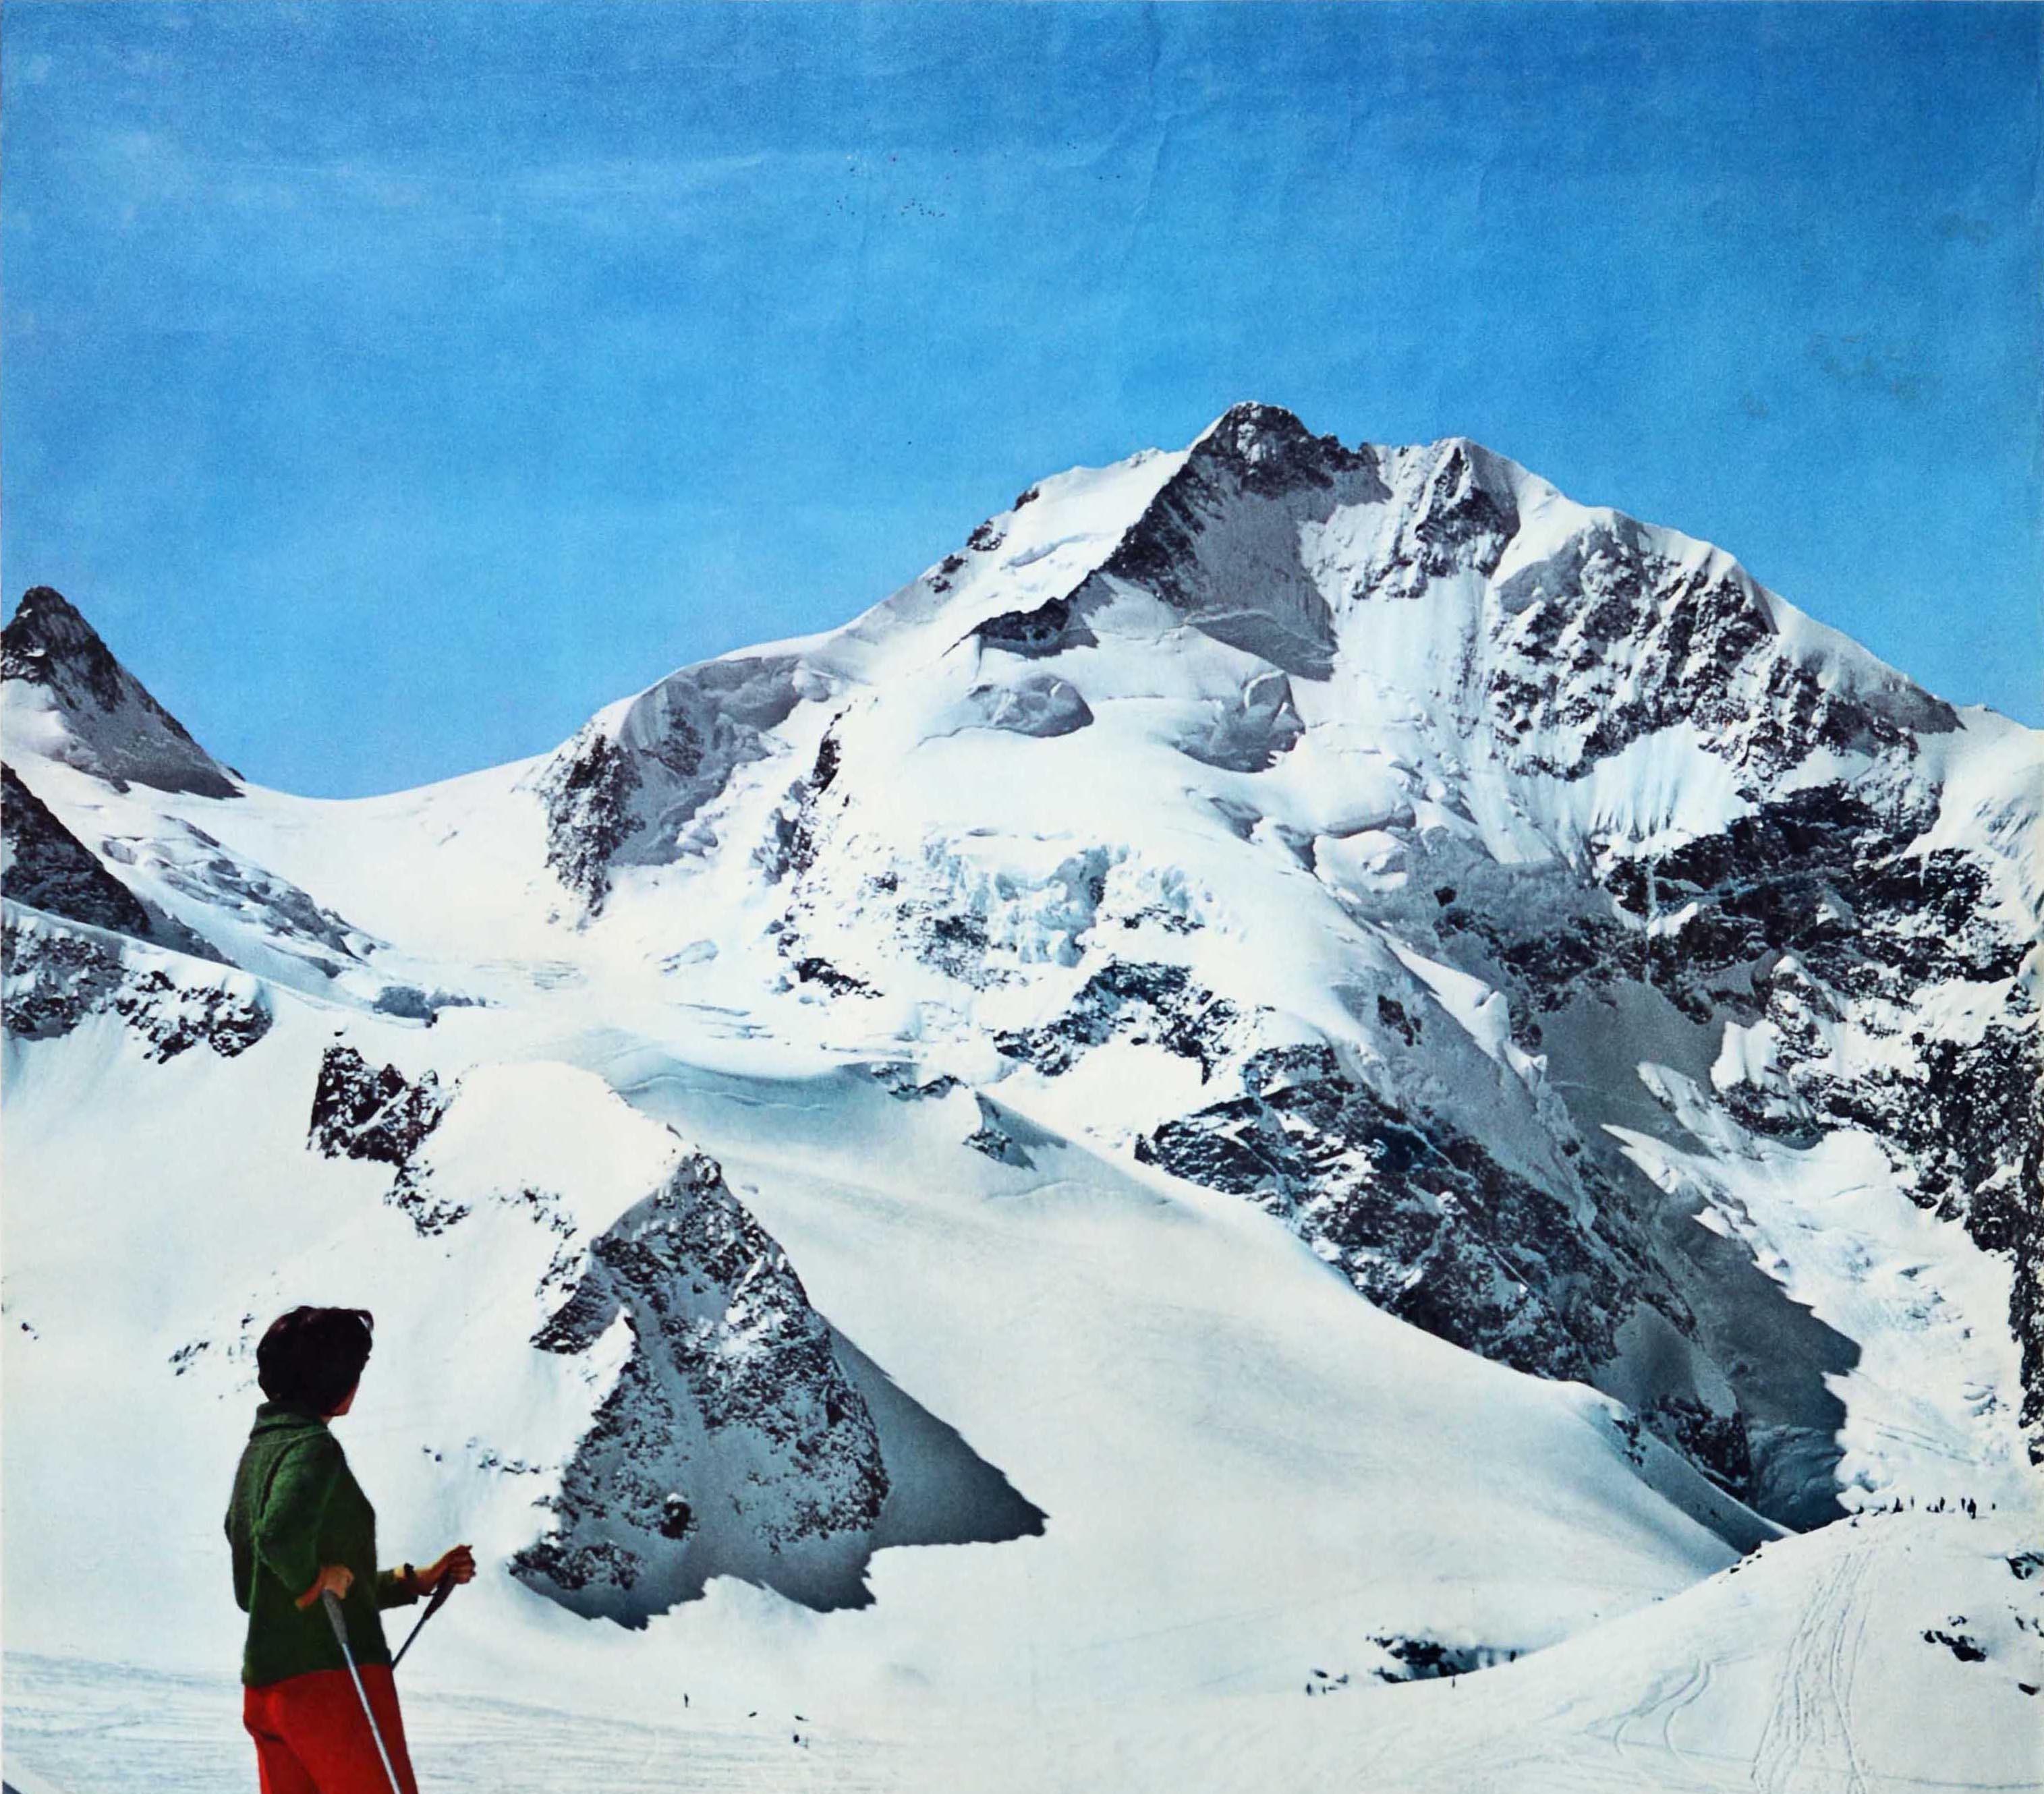 Affiche originale de sports d'hiver pour la populaire station suisse de Pontresina, représentant une femme à skis sur une montagne admirant la beauté des Alpes de l'Engadine, avec un téléski et des skieurs sur la piste en contrebas, le titre en